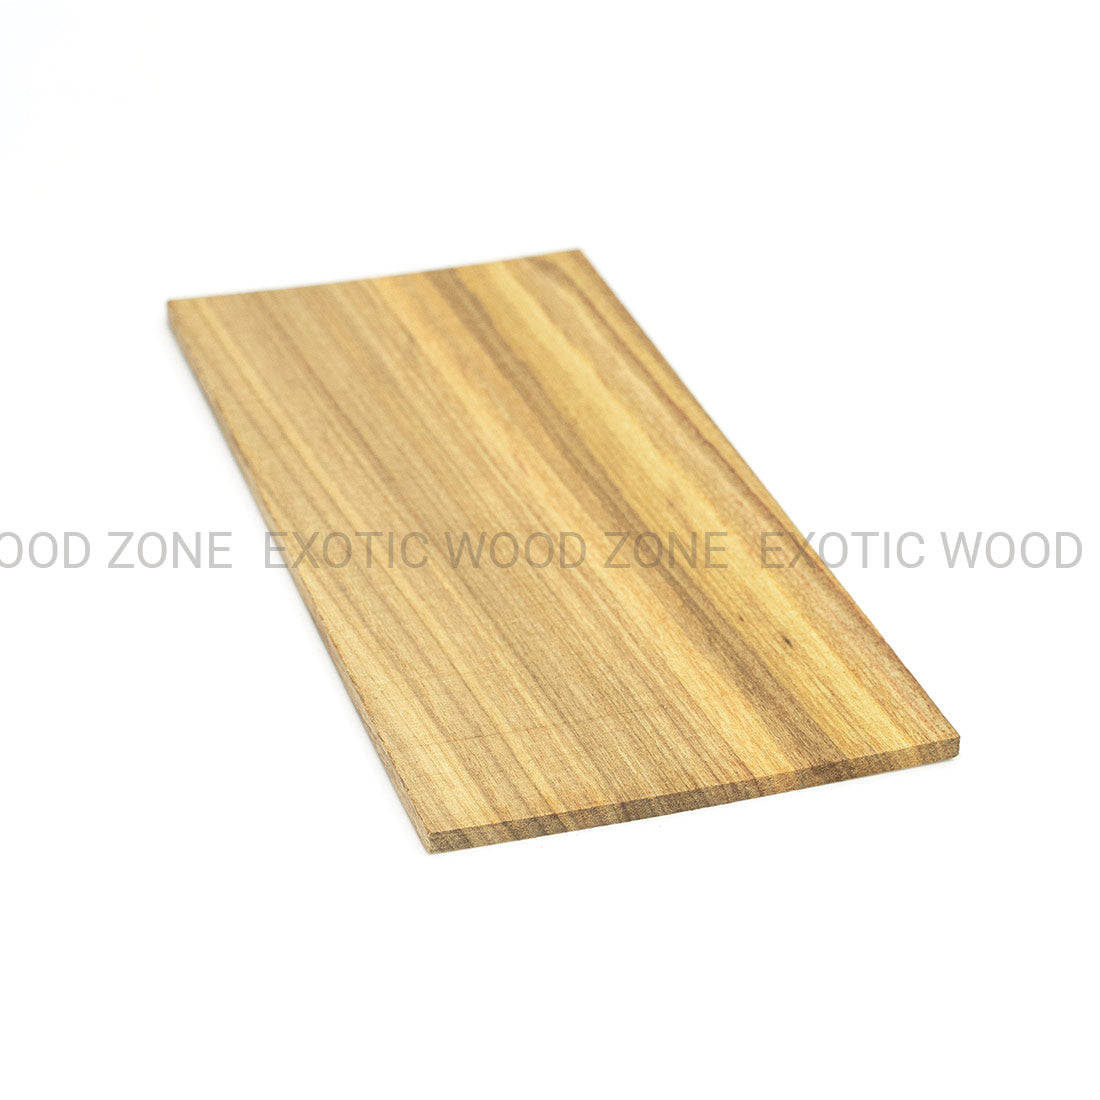 Canarywood Guitar Headplate Wood Blank Exotic Wood Zone Headplates